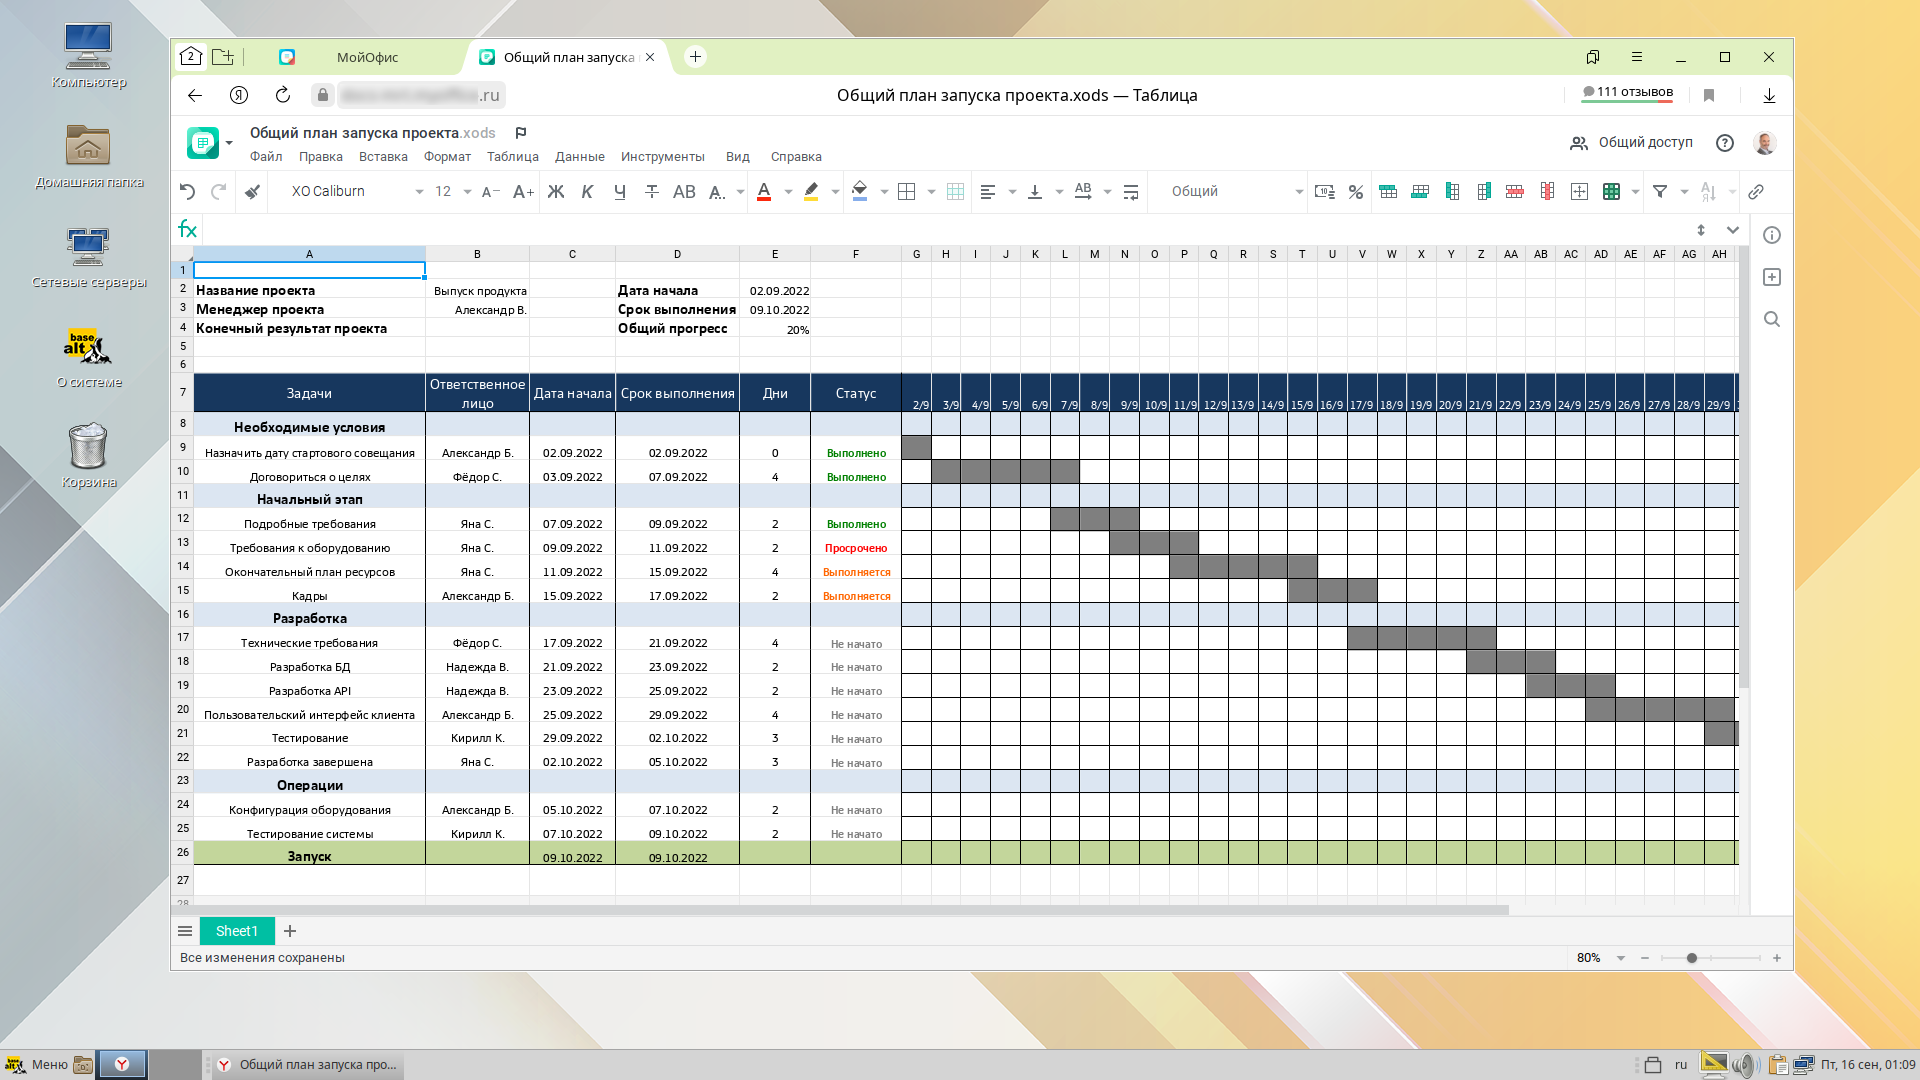 Табличный веб-редактор «МойОфис Частное Облако 2» позволяет комфортно работать с различными электронными таблицами, производить формулы и вычисления